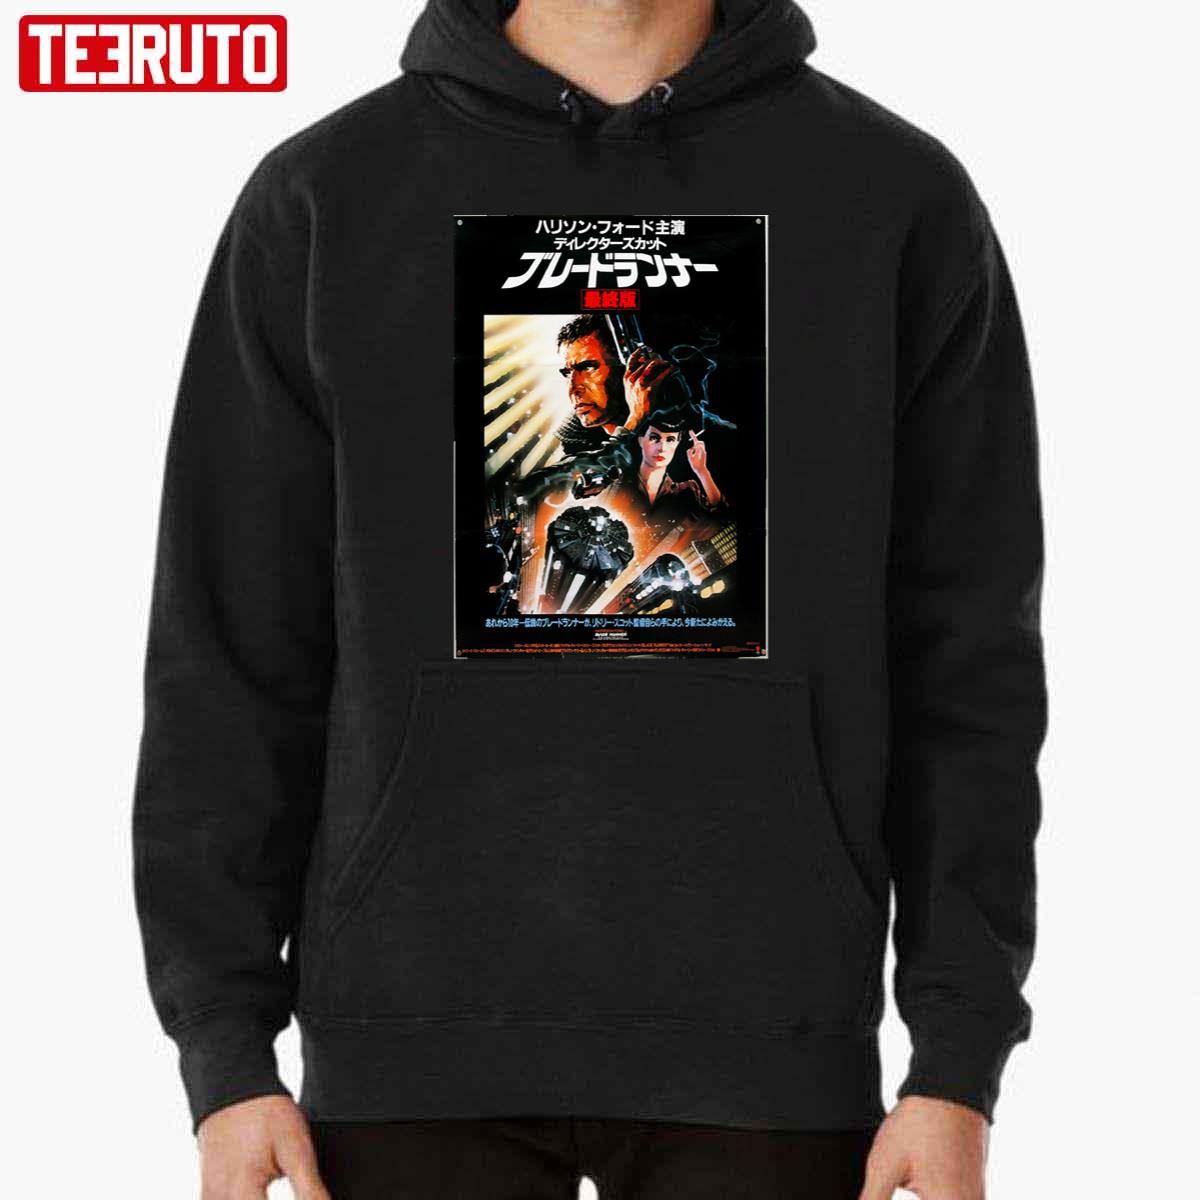 Blade Runner Japanese Movie Vintage Unisex Sweatshirt Hoodie